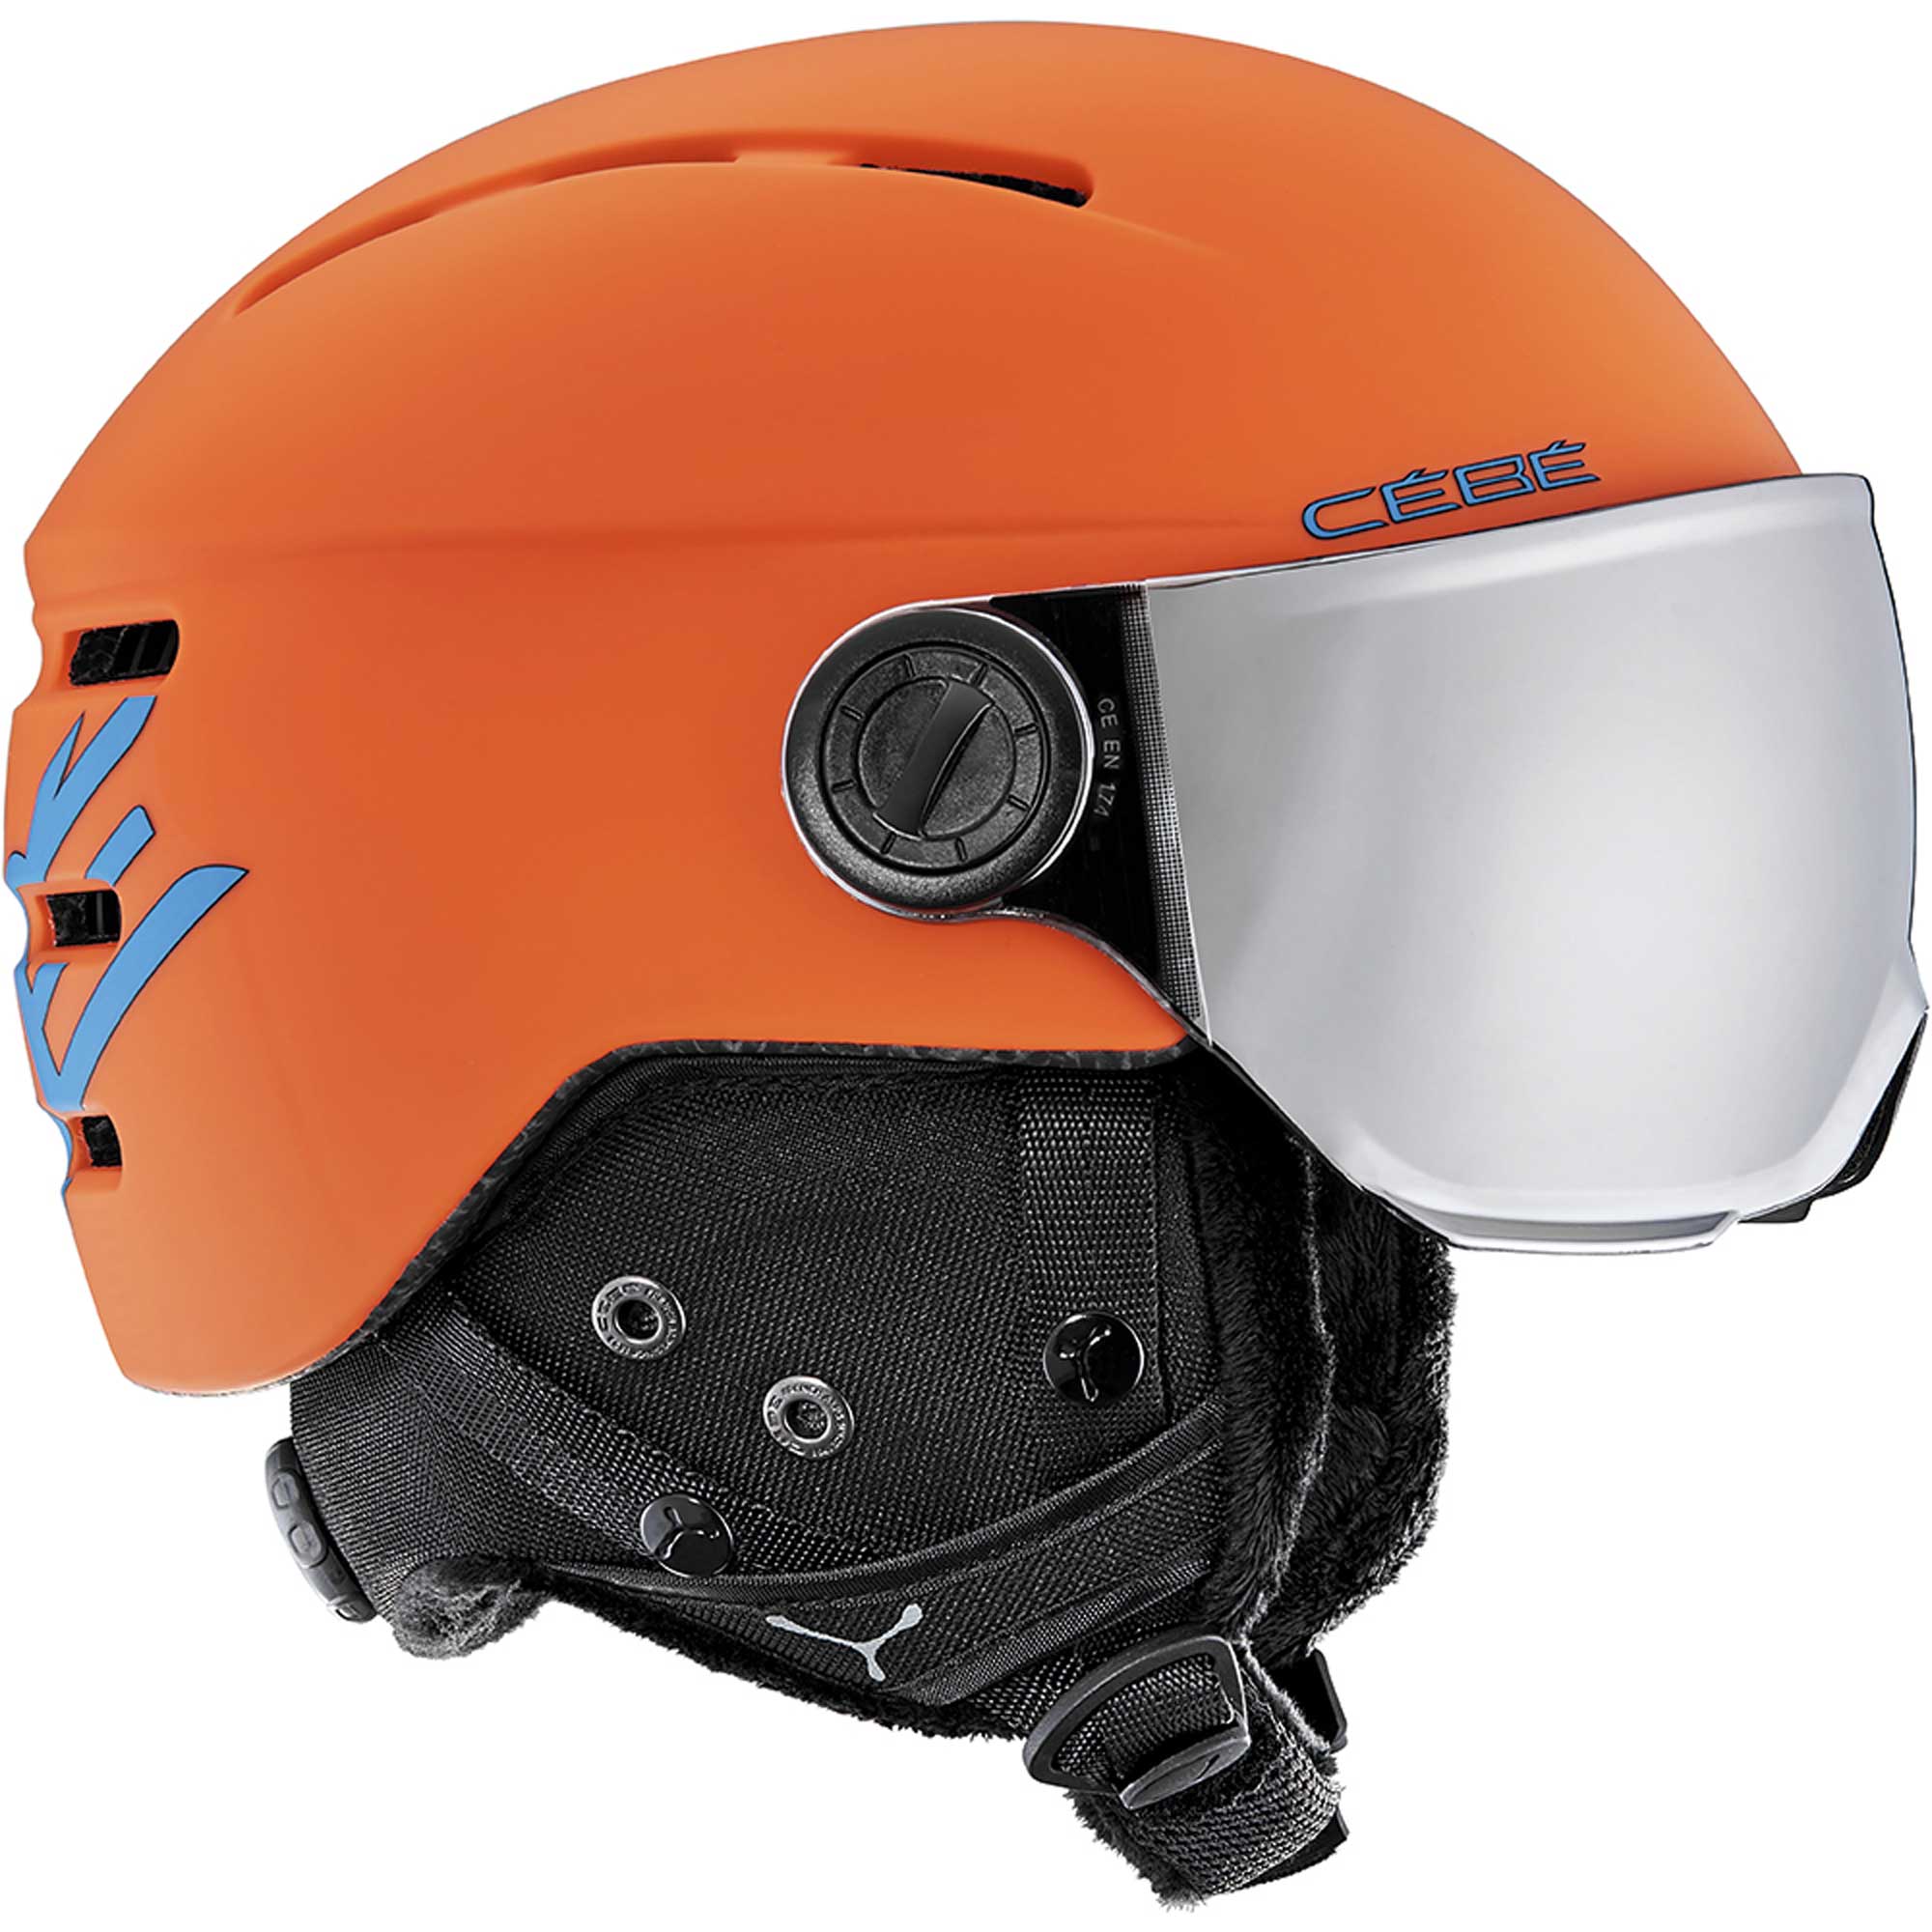 Children’s helmet with visor